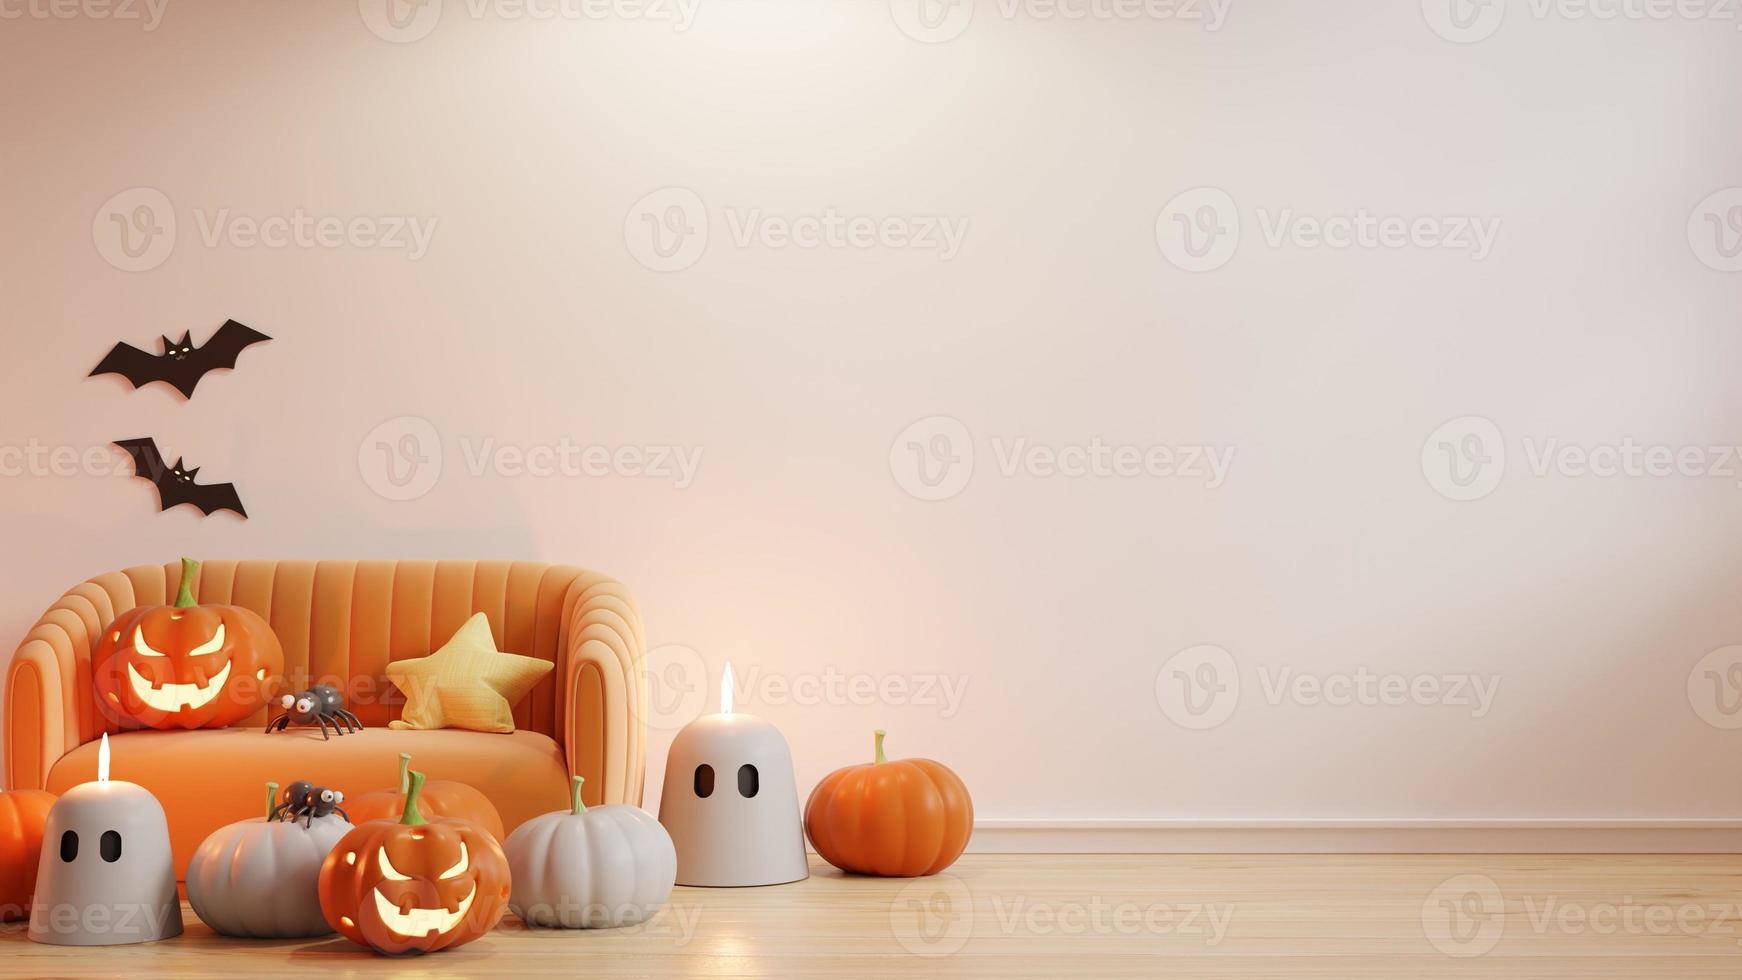 fiesta de halloween en salón con sofá naranja y decoración de accesorios fiesta. representación de ilustración 3d foto